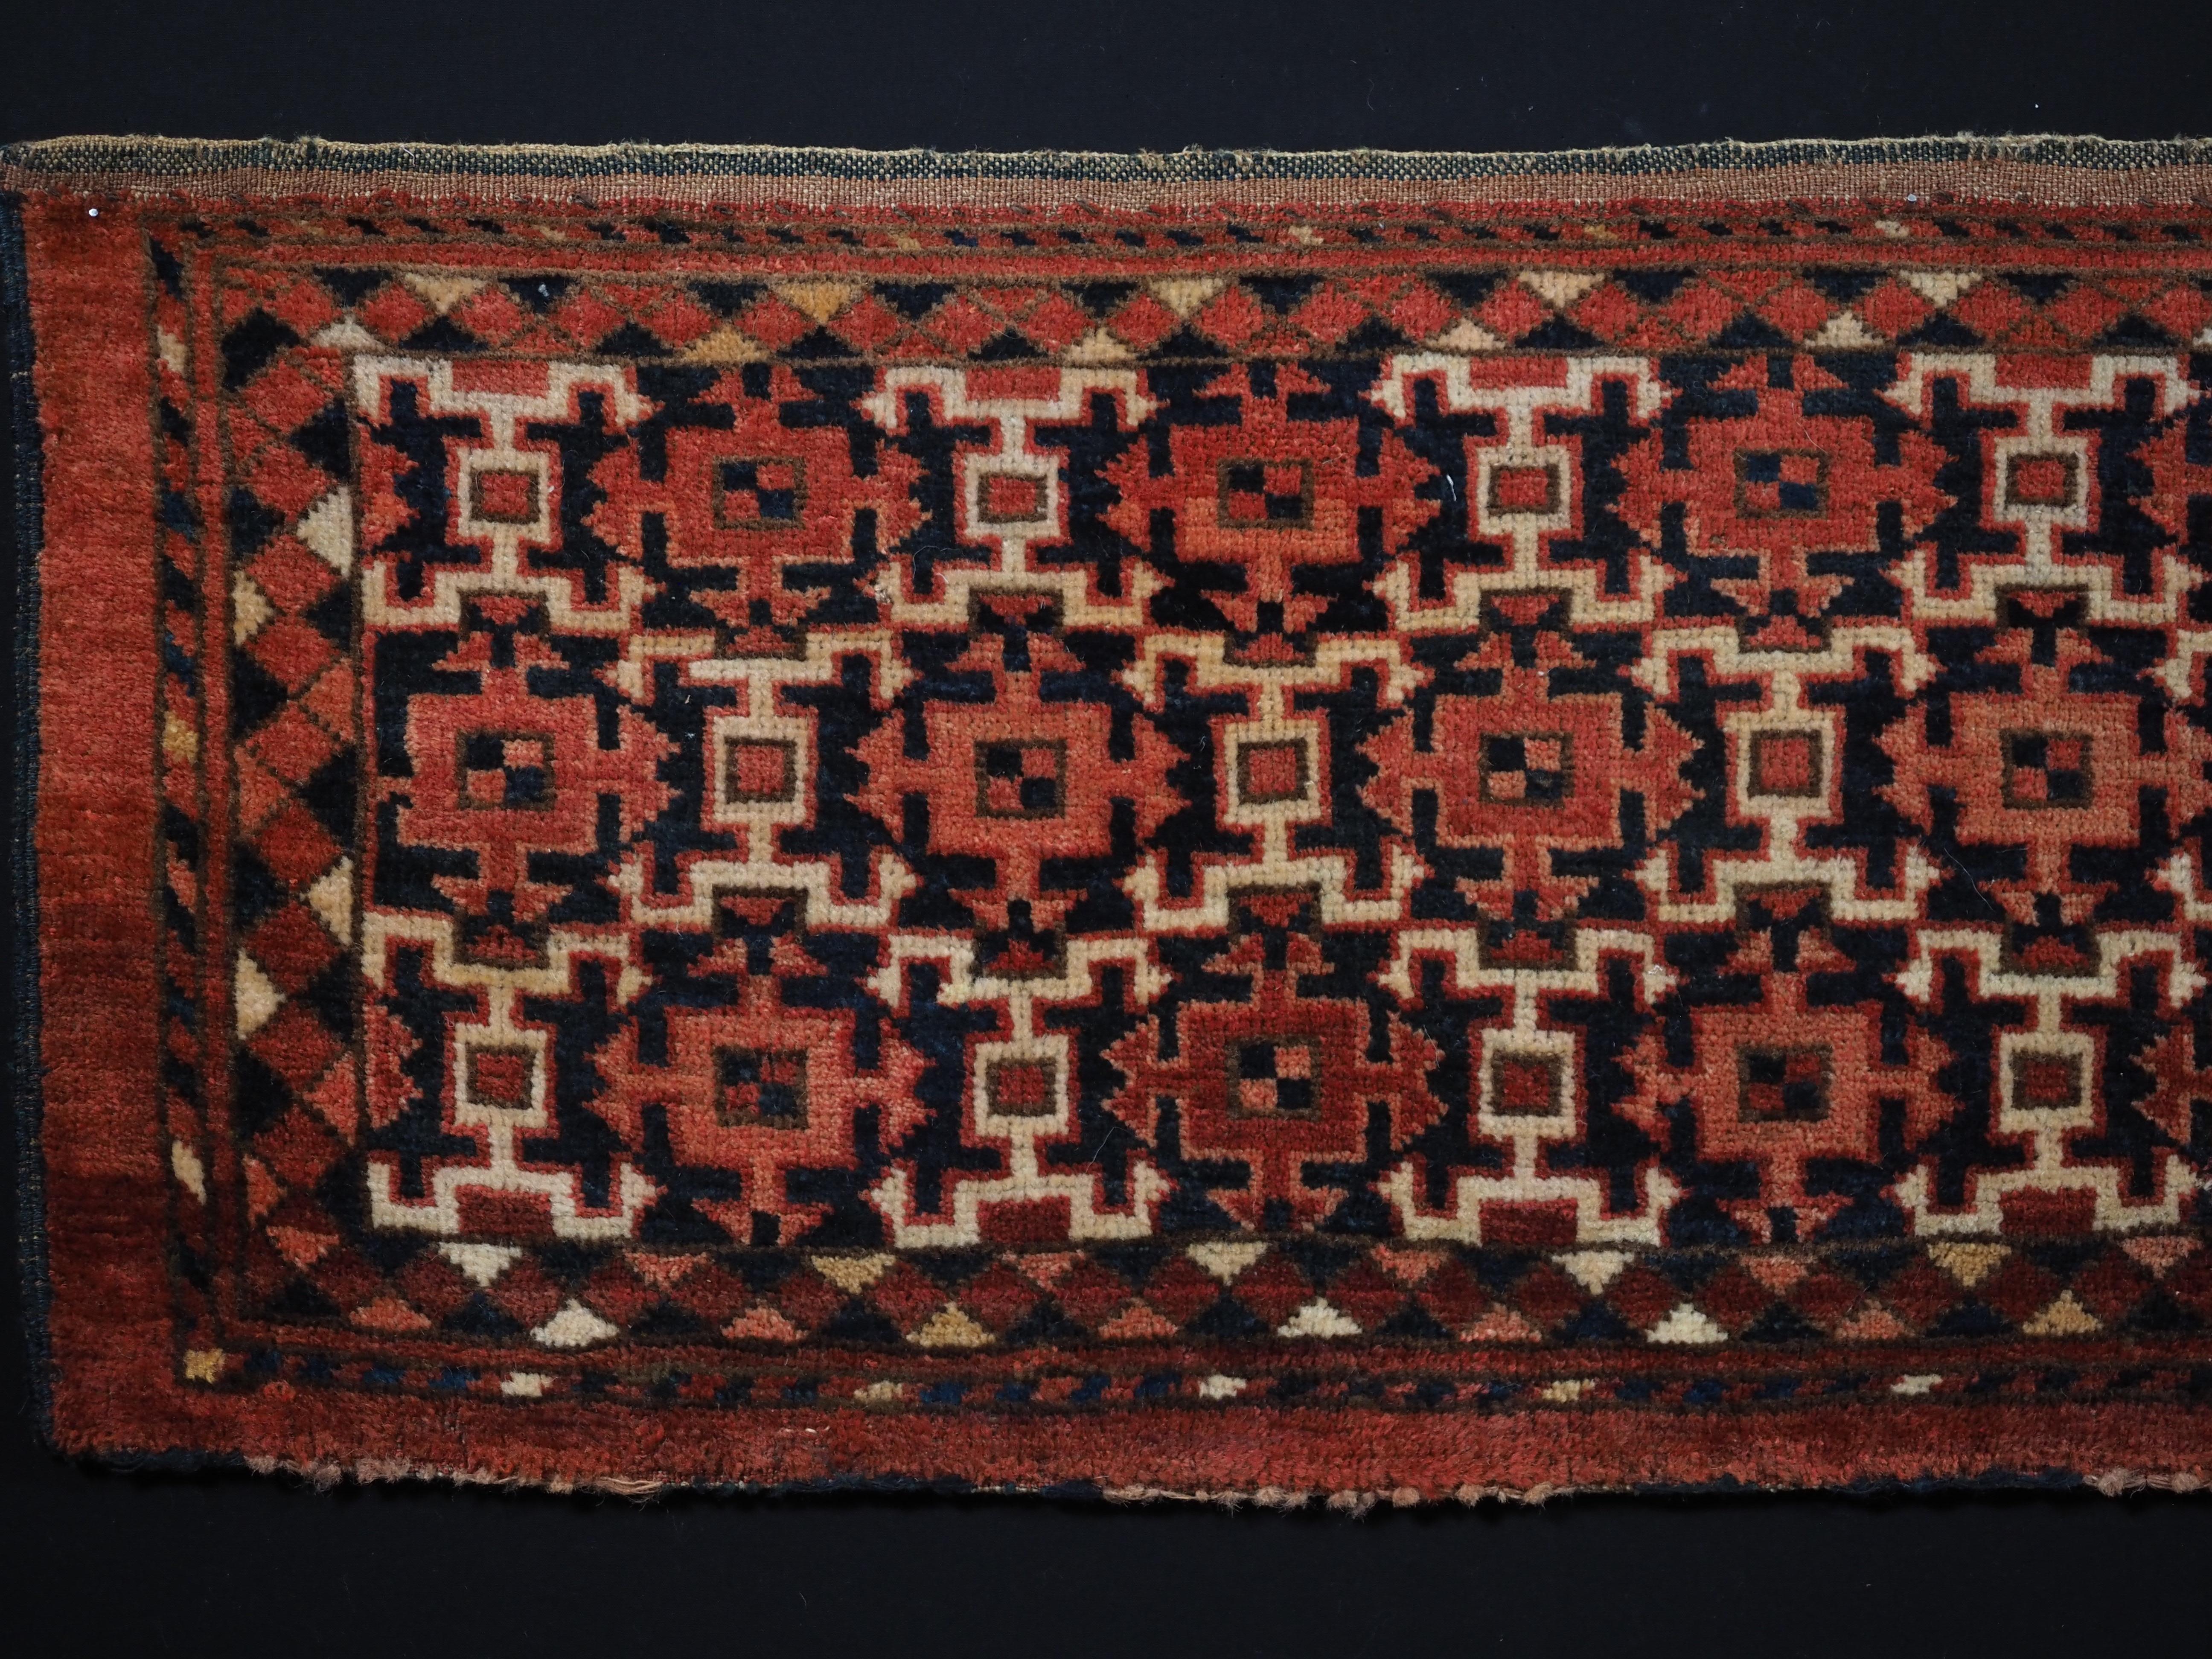 
Größe: 4ft 11in x 1ft 4in (150 x 41cm)

Antike türkische Ersari-Torba mit kochak-Design.

Um 1880.

Torba sind flache Wandsäcke, die vor allem in Zelten oder Jurten zur Aufbewahrung von persönlichen Gegenständen verwendet werden, aber auch die